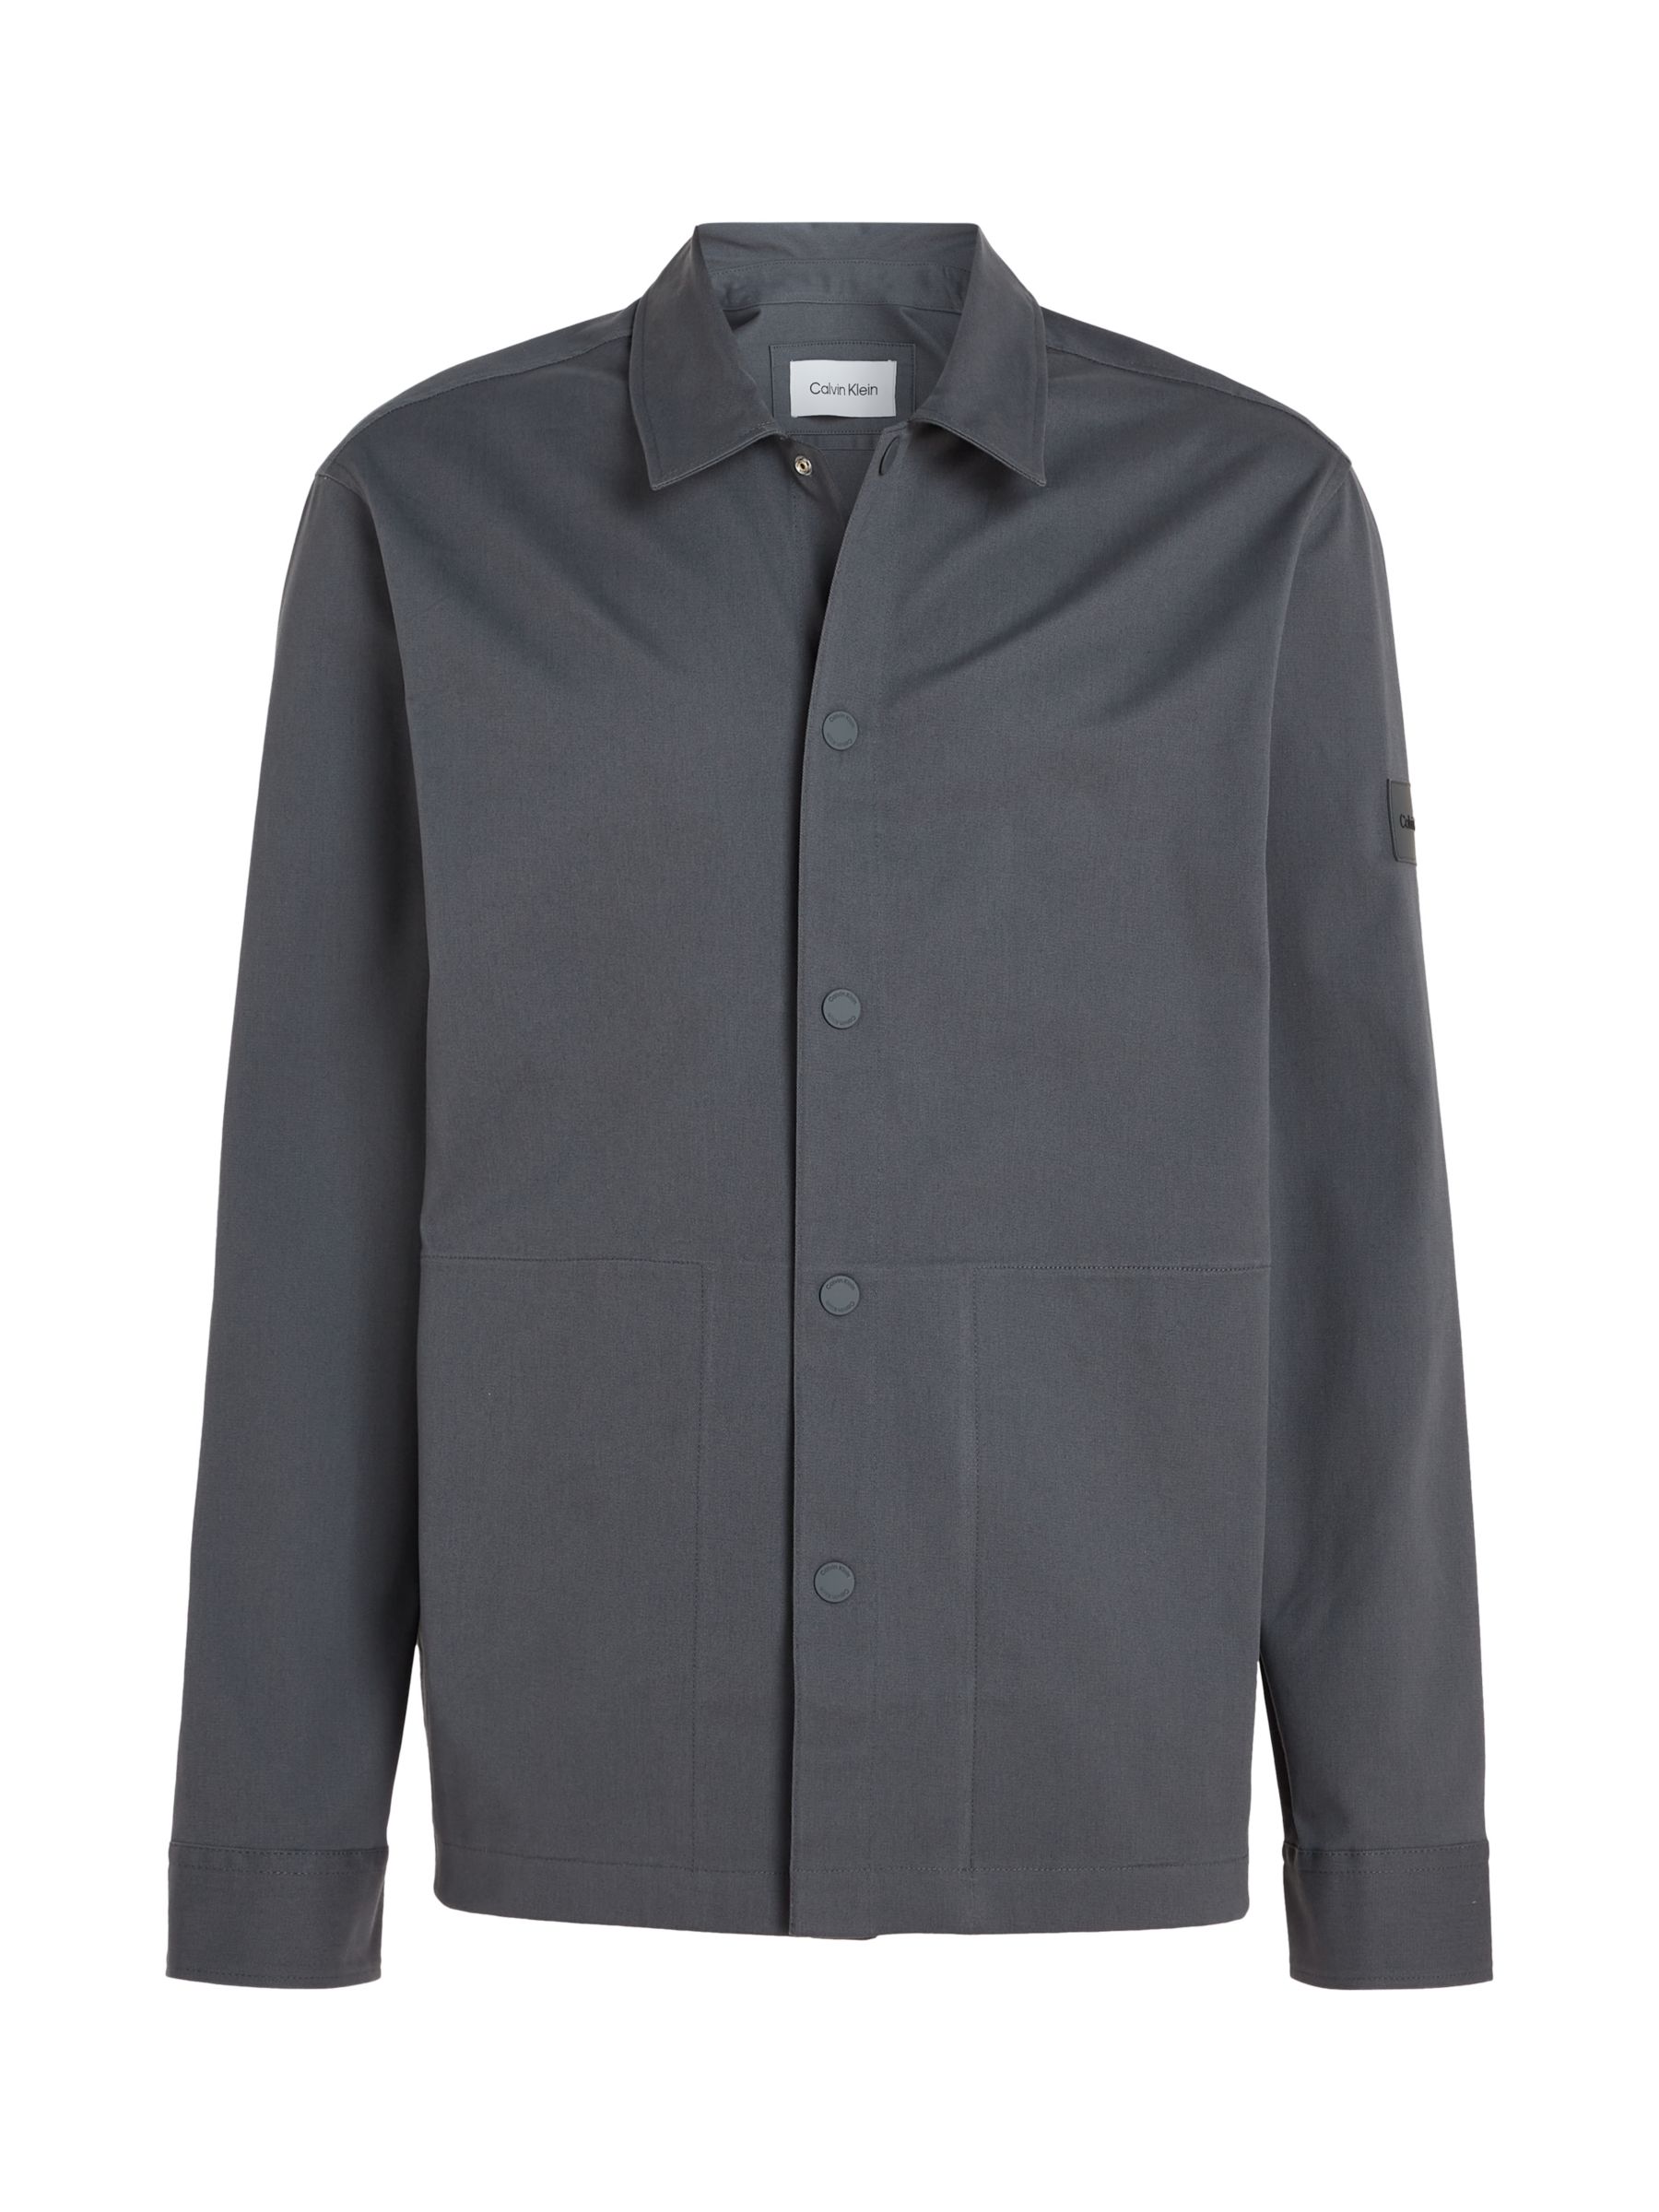 Calvin Klein Modern Twill Overshirt, Grey at John Lewis & Partners